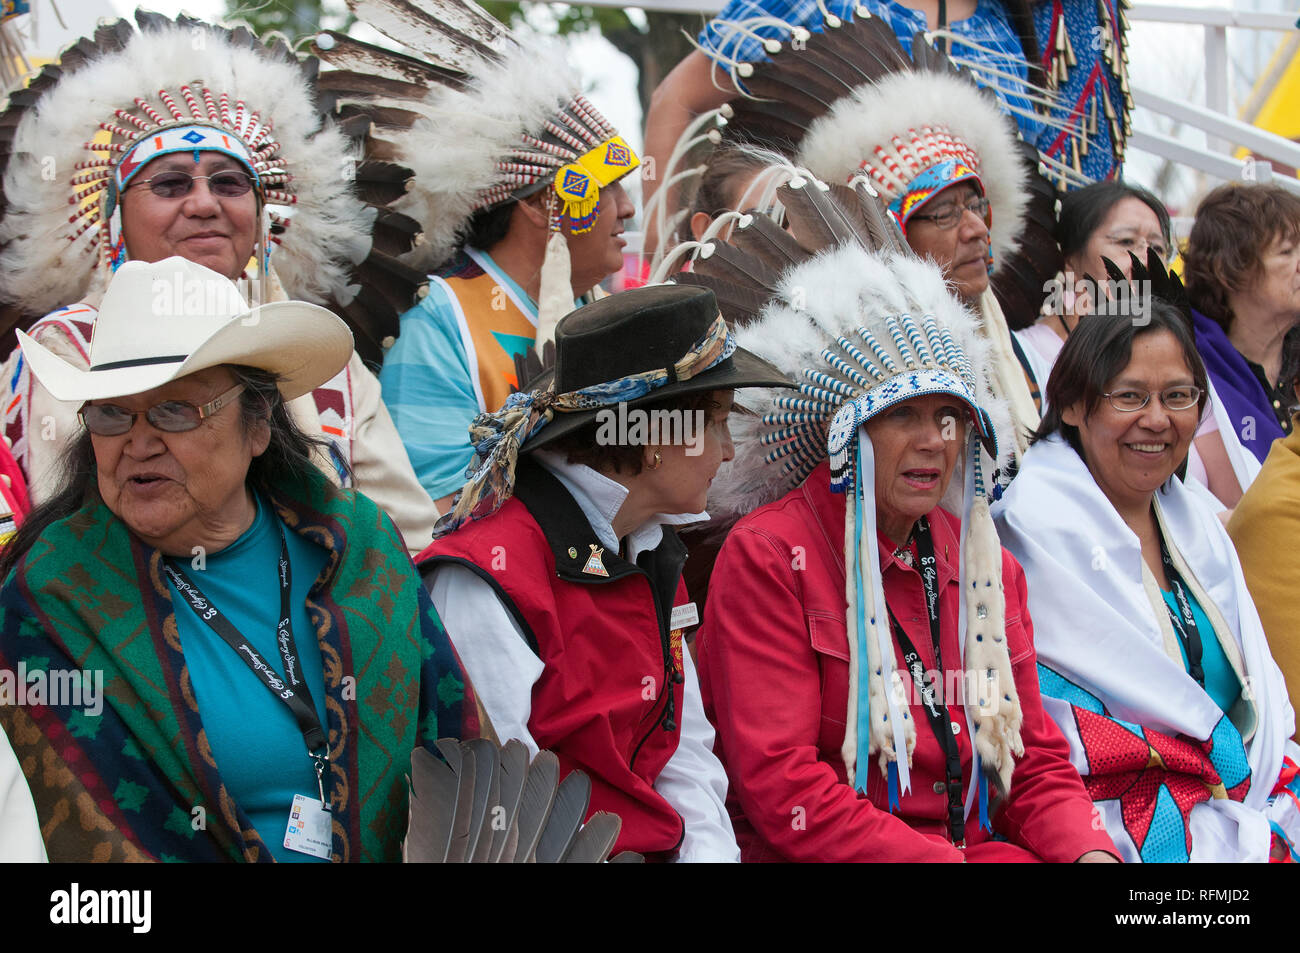 Les autochtones canadiens en costume traditionnel au Stampede de Calgary, Calgary, Alberta, Canada Banque D'Images